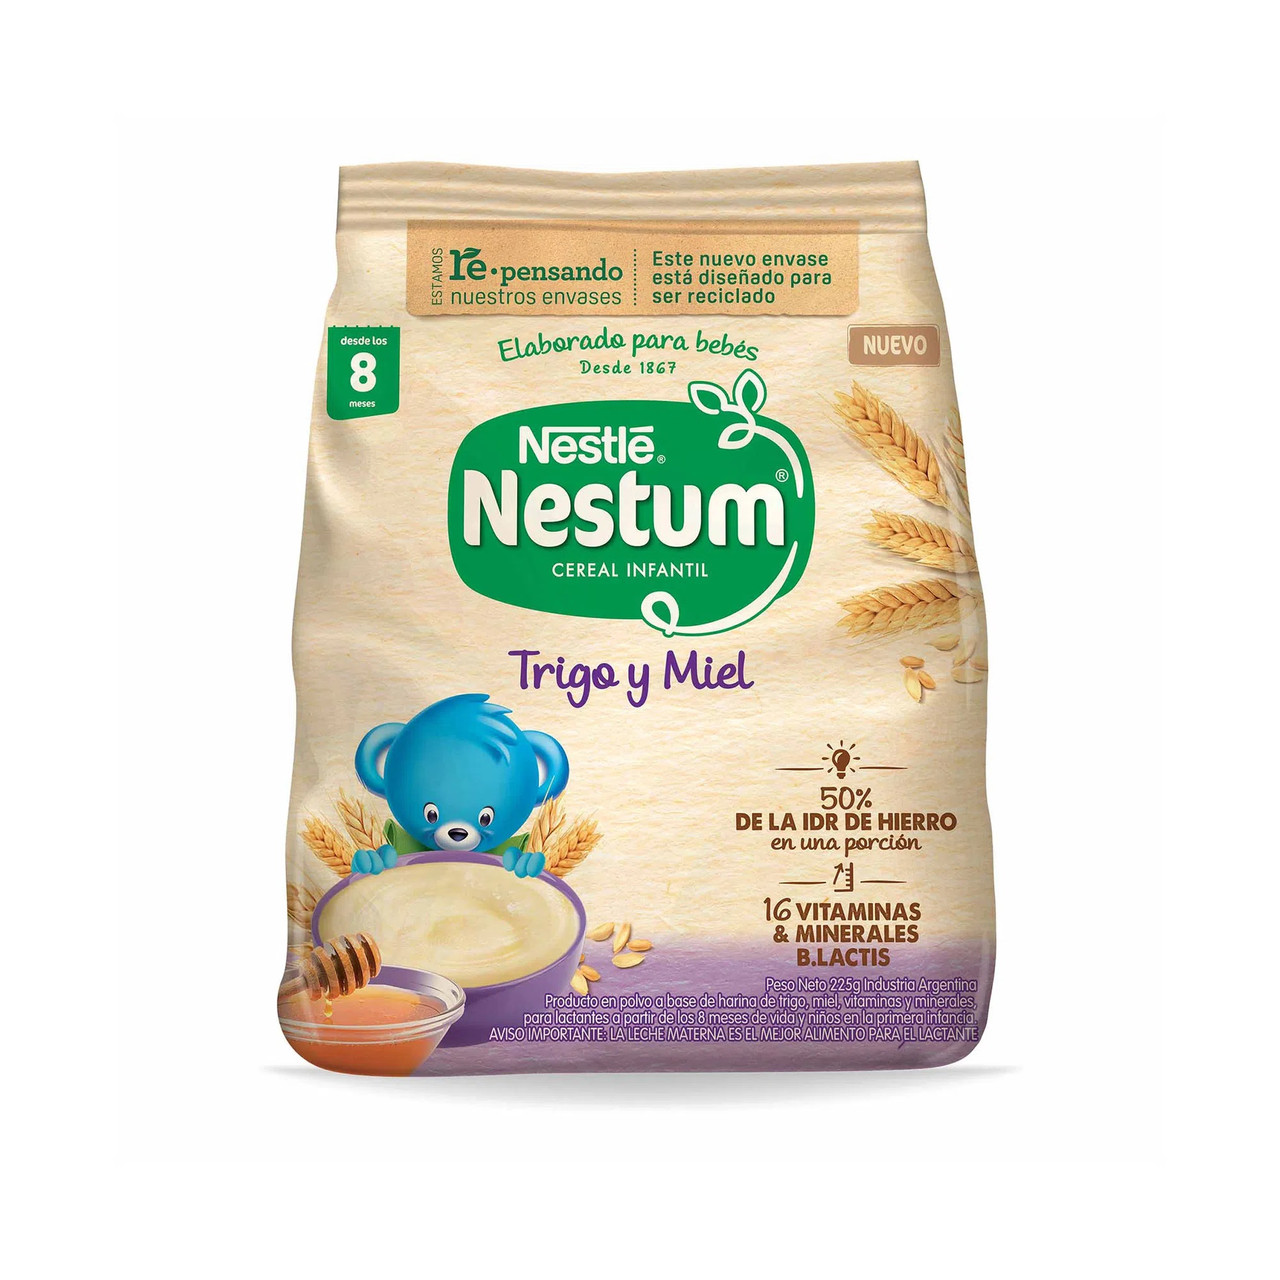 Cereal Para Bebé Trigo Y Leche 250 G - Nestum - Cemaco